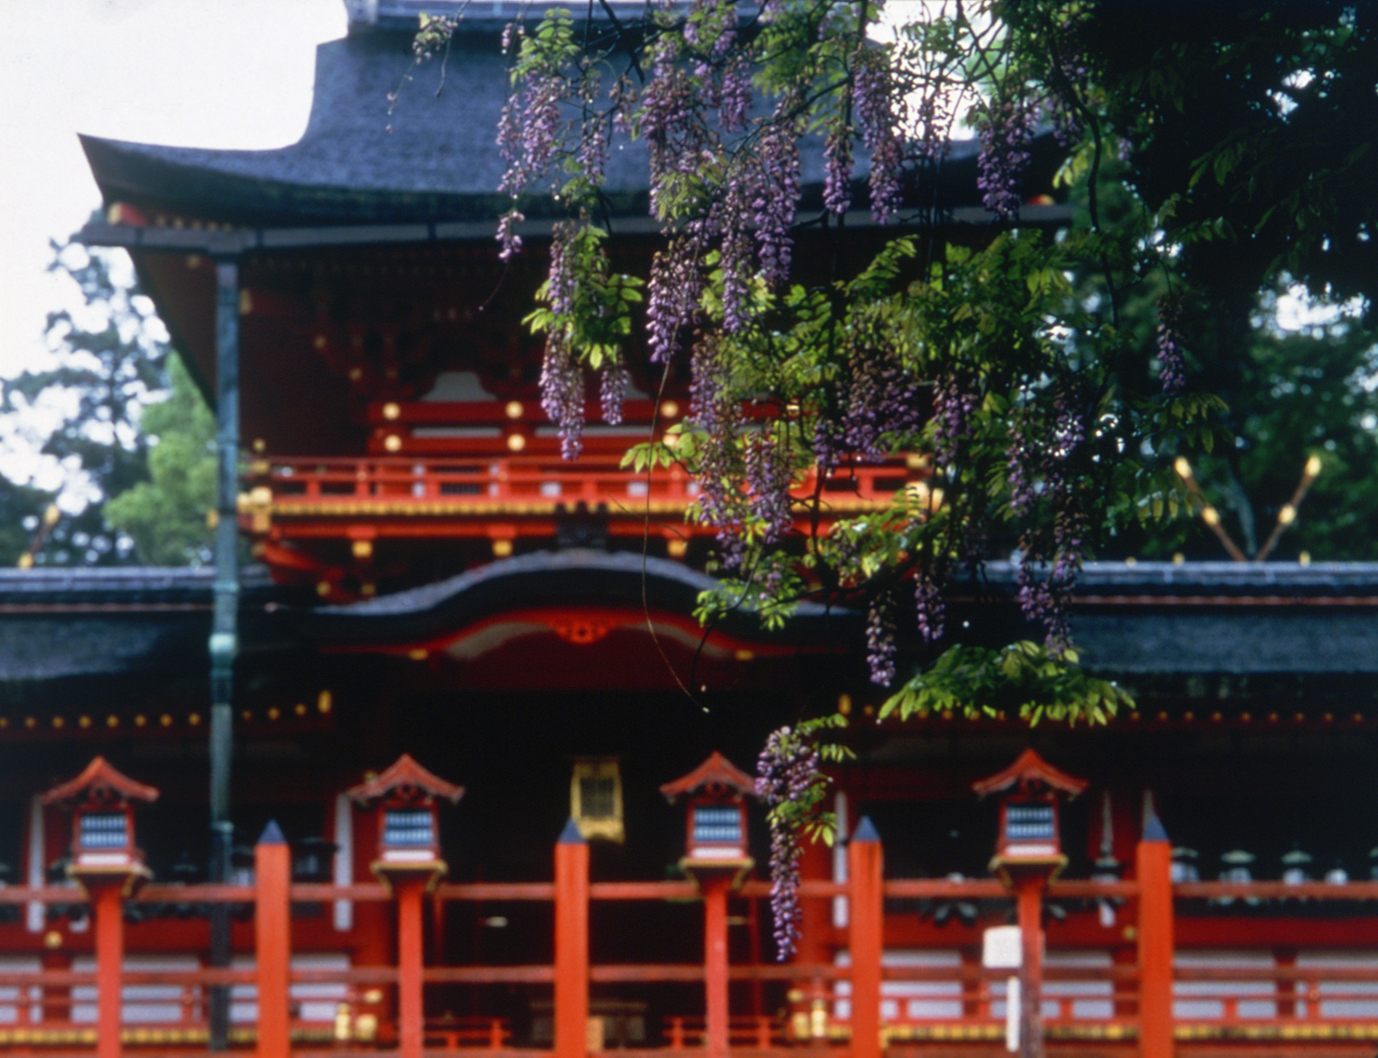 全国约 3,000 家春日神社的总部
照片提供：奈良观光局